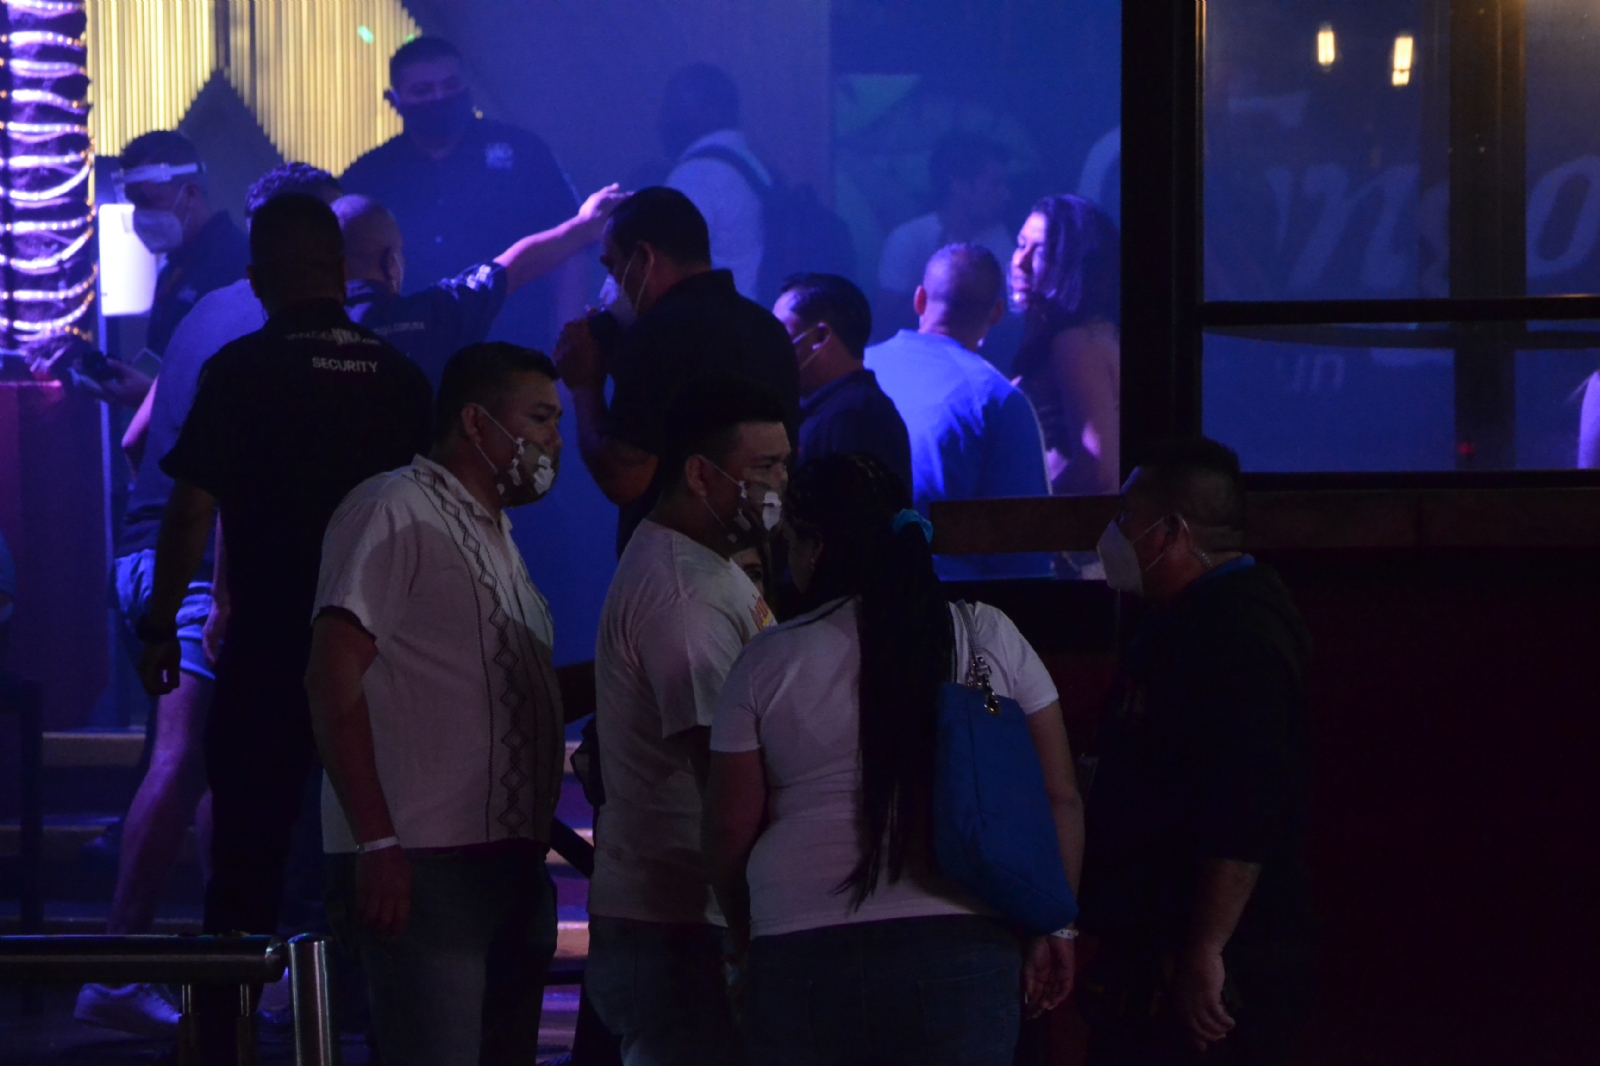 Exhiben fiesta sin parar en Cancún como si no hubiera COVID: VIDEO